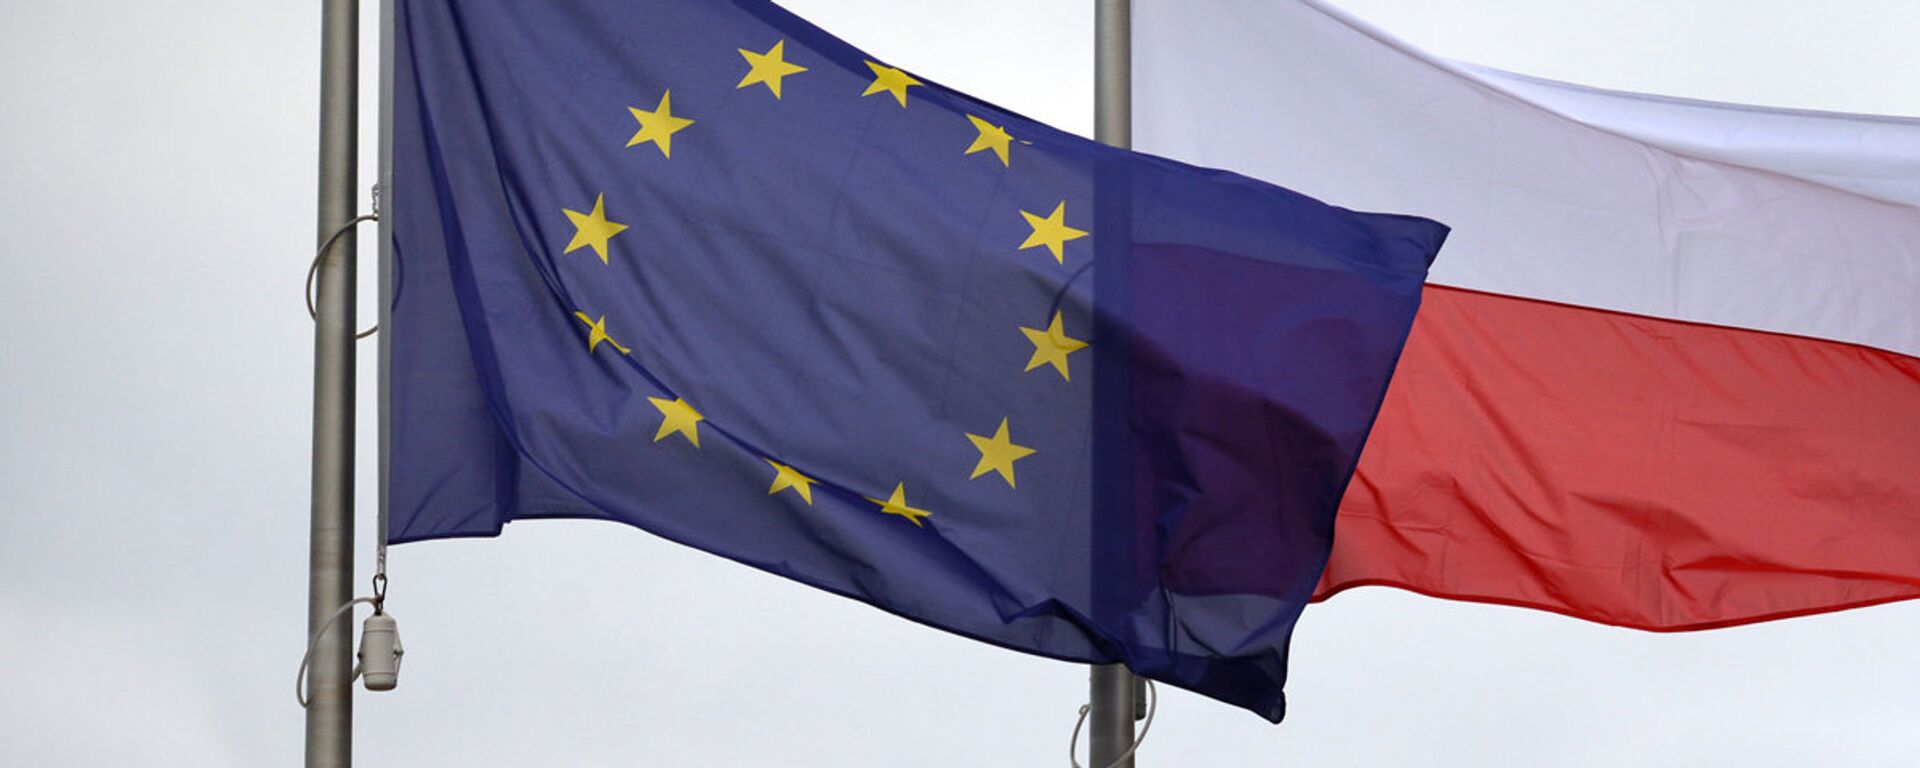 Флаги Евросоюза и Польши - Sputnik Латвия, 1920, 05.07.2021